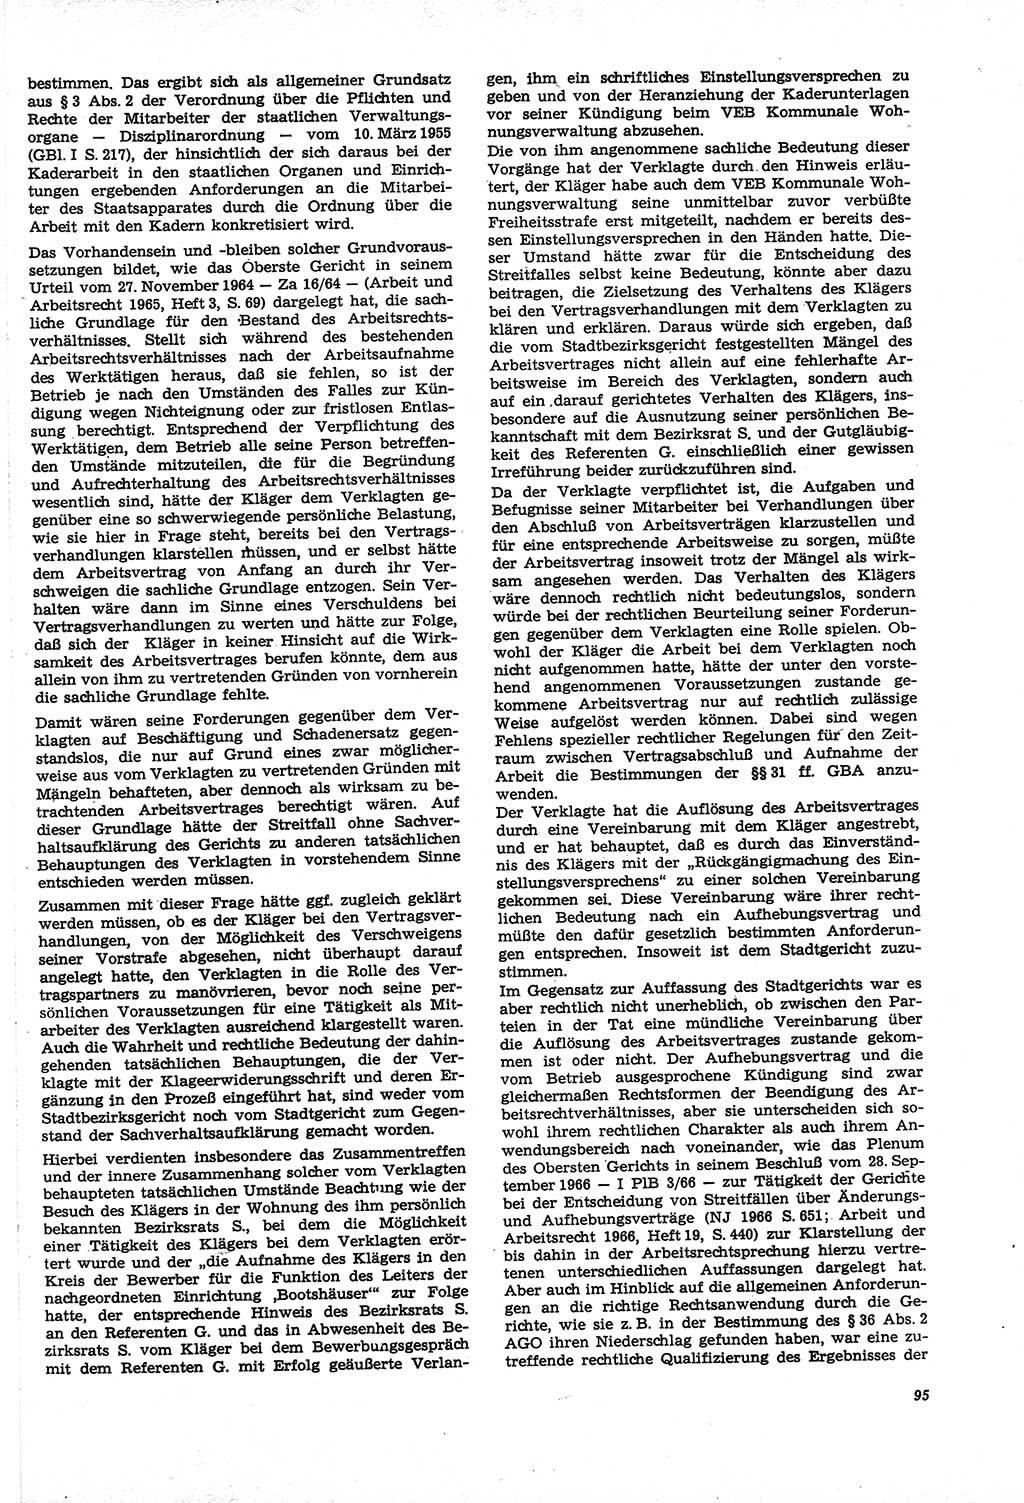 Neue Justiz (NJ), Zeitschrift für Recht und Rechtswissenschaft [Deutsche Demokratische Republik (DDR)], 21. Jahrgang 1967, Seite 95 (NJ DDR 1967, S. 95)